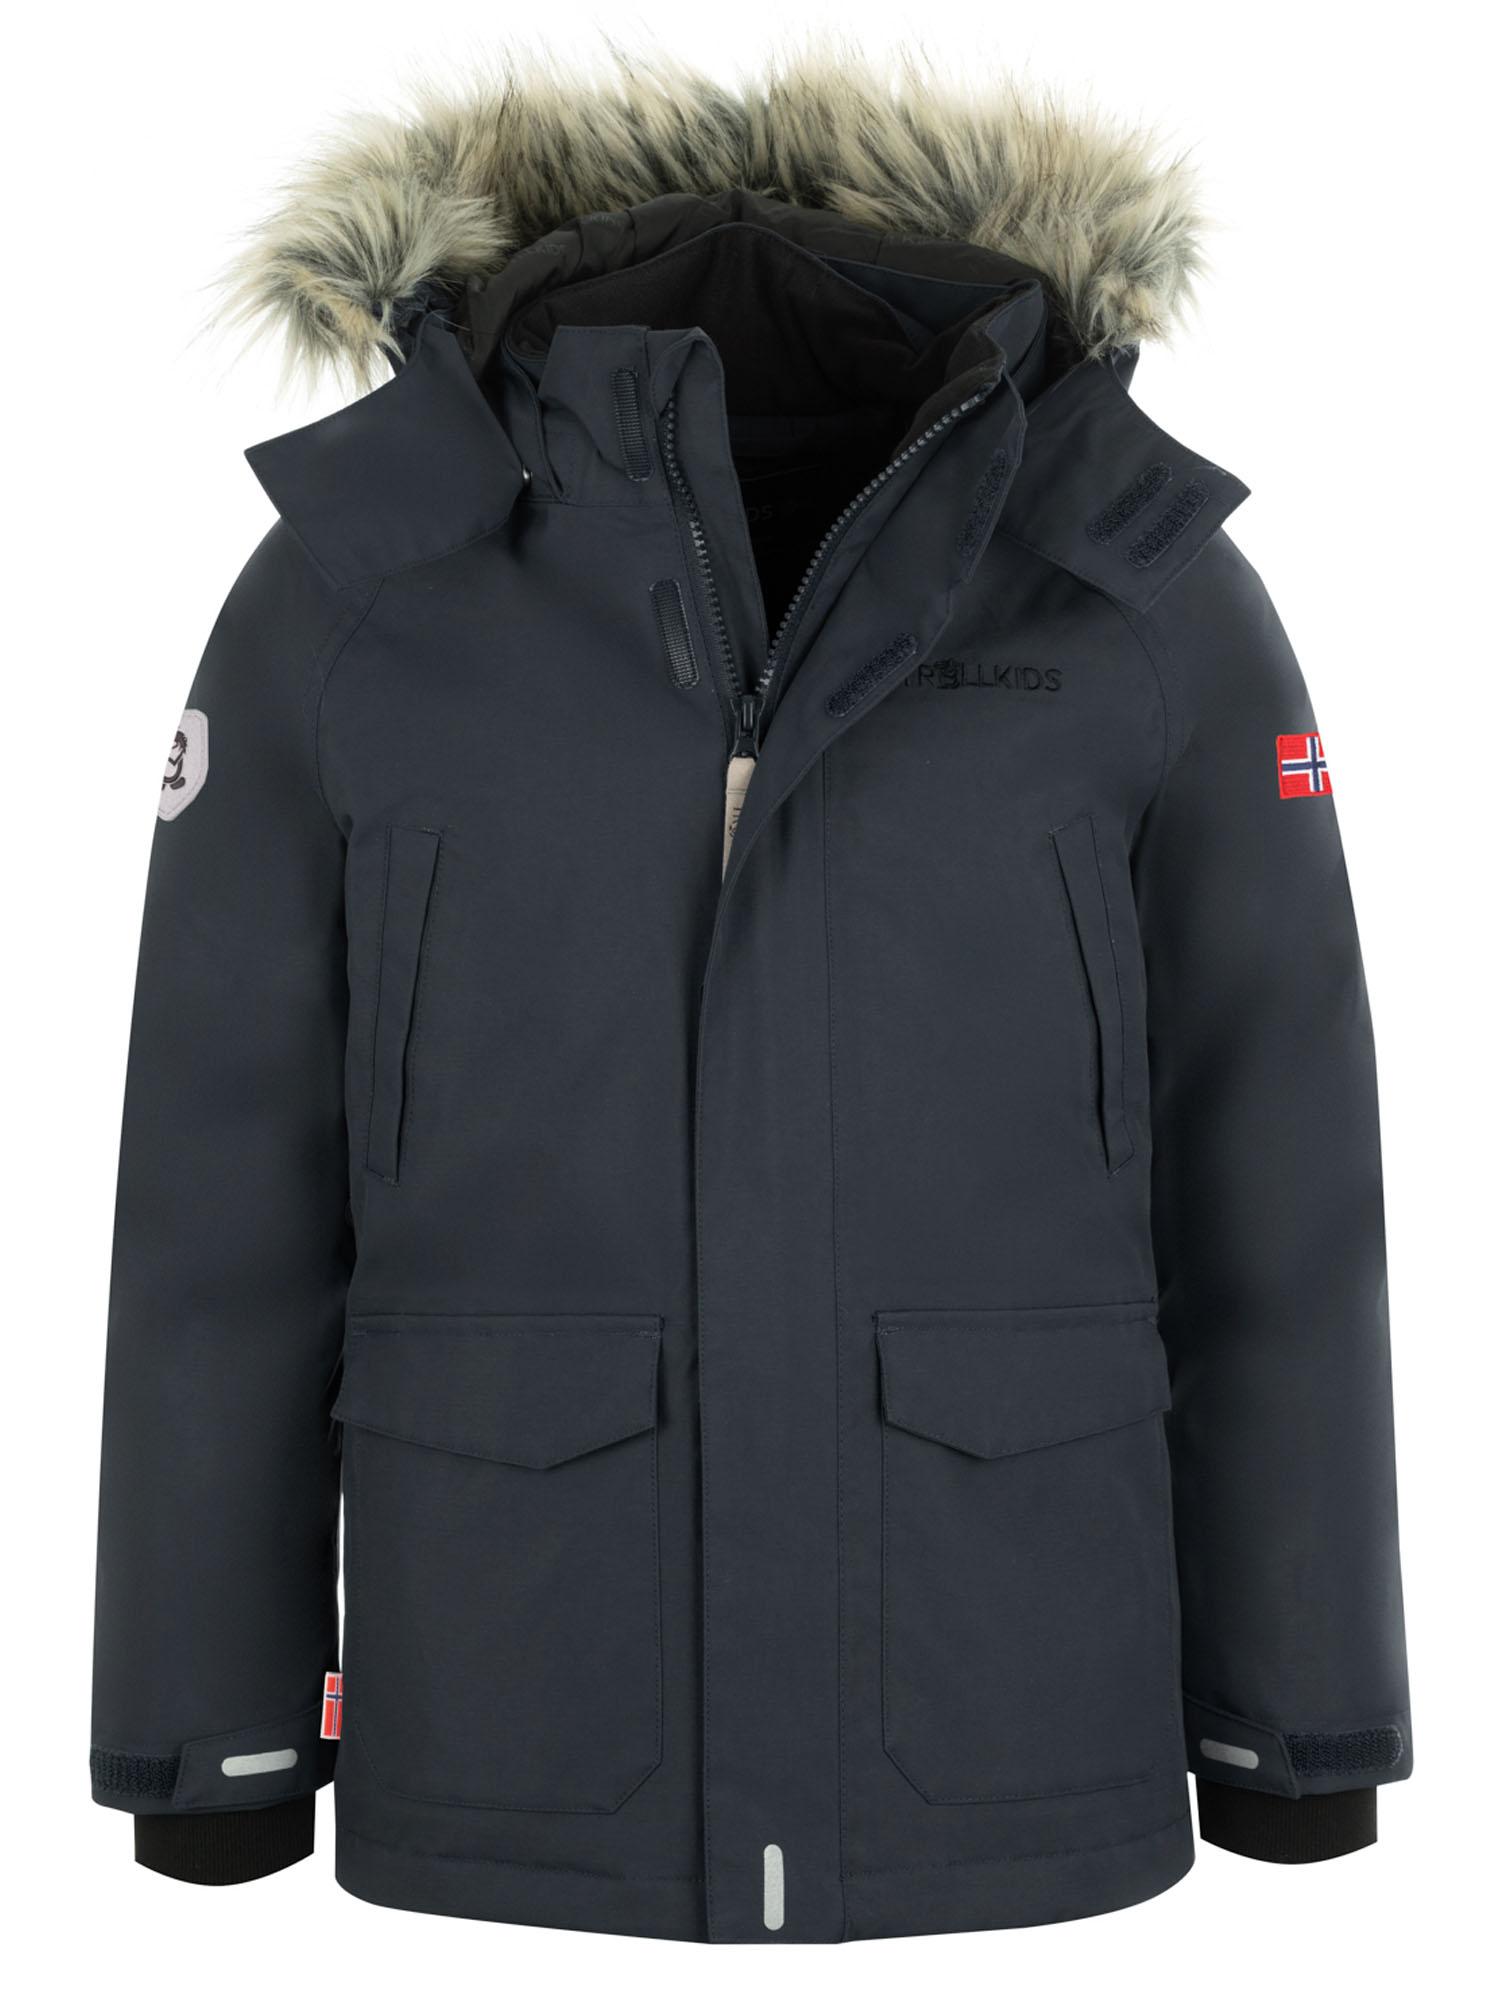 Куртка Детская Trollkids Spitsbergen Anthracite (Рост:110) куртка детская trollkids girls olso coat xt anthracite mint рост 128